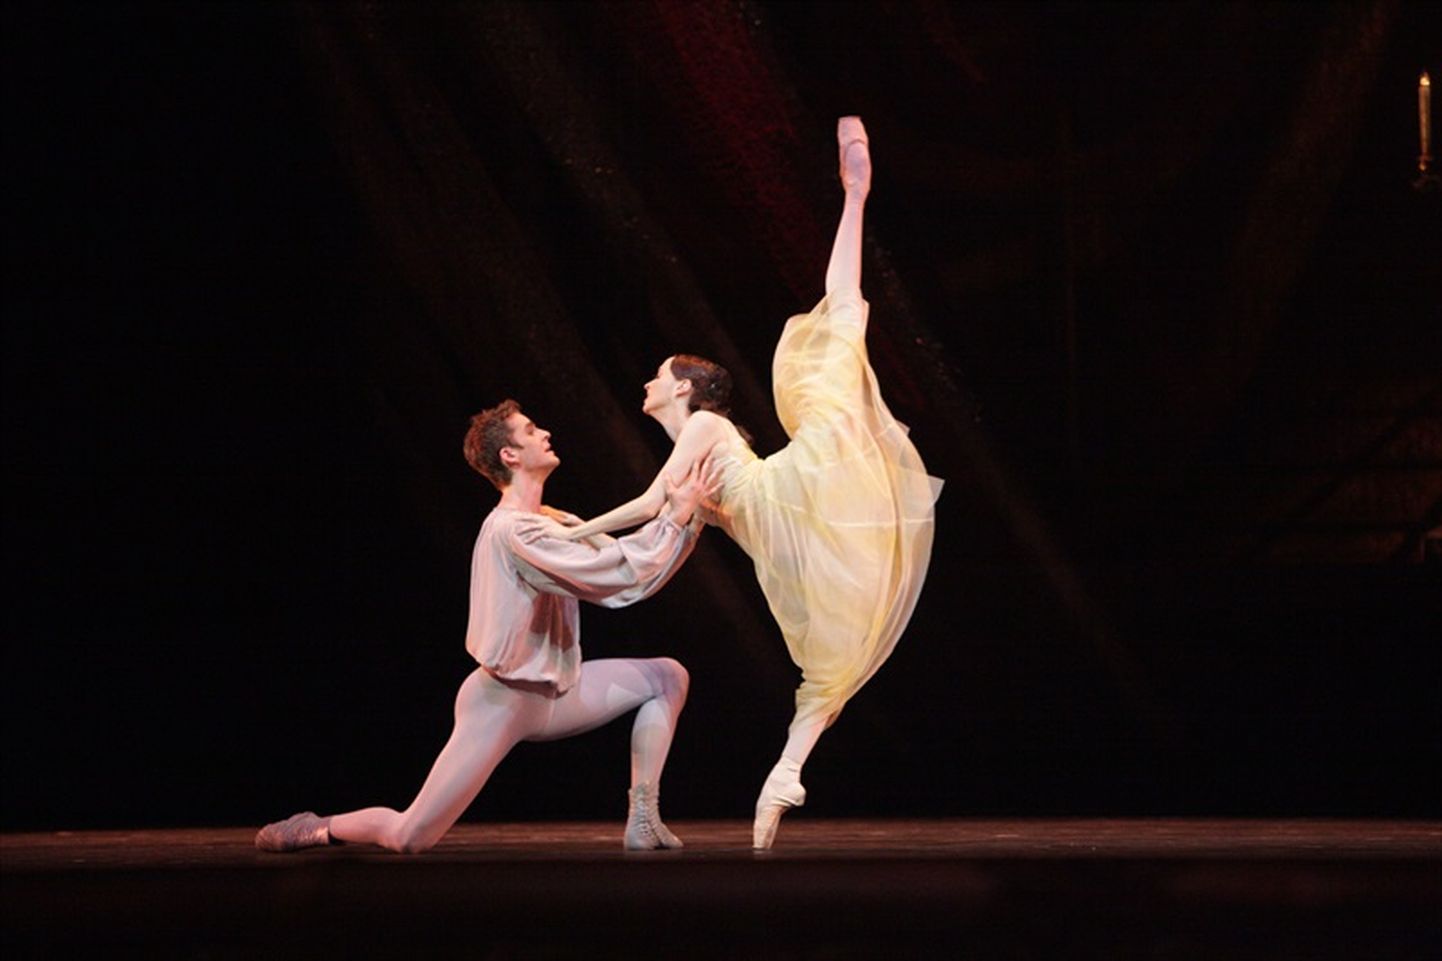 Centrumi kinos on balletietenduse Bolšoi ballett «Romeo ja Julia» ülekanne